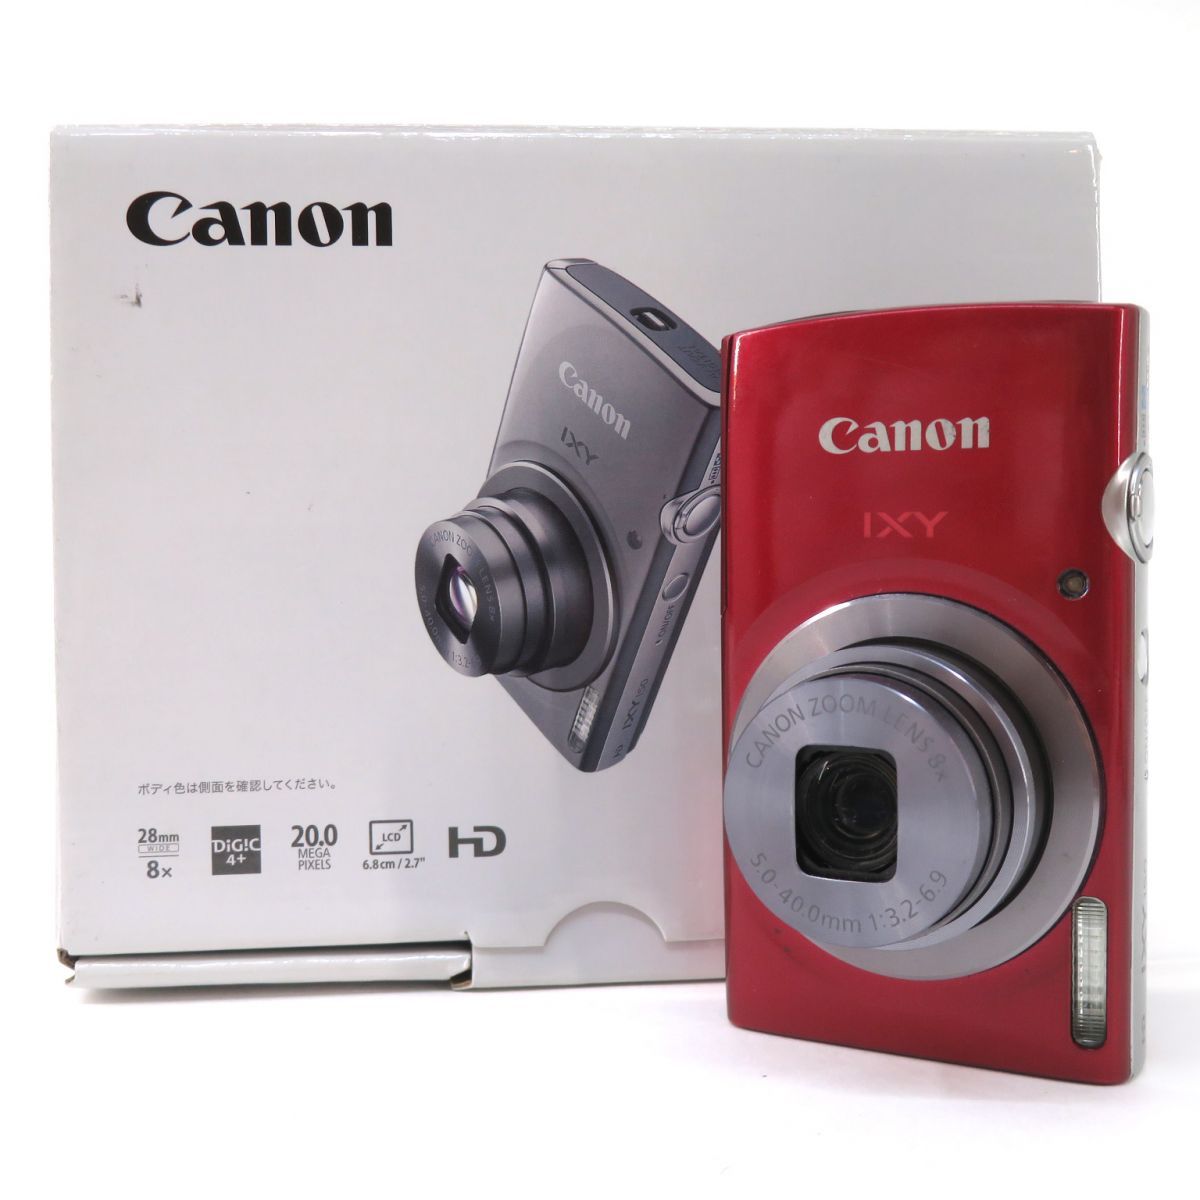 Canon キヤノン IXY 150 レッド コンパクトデジタルカメラ ※中古